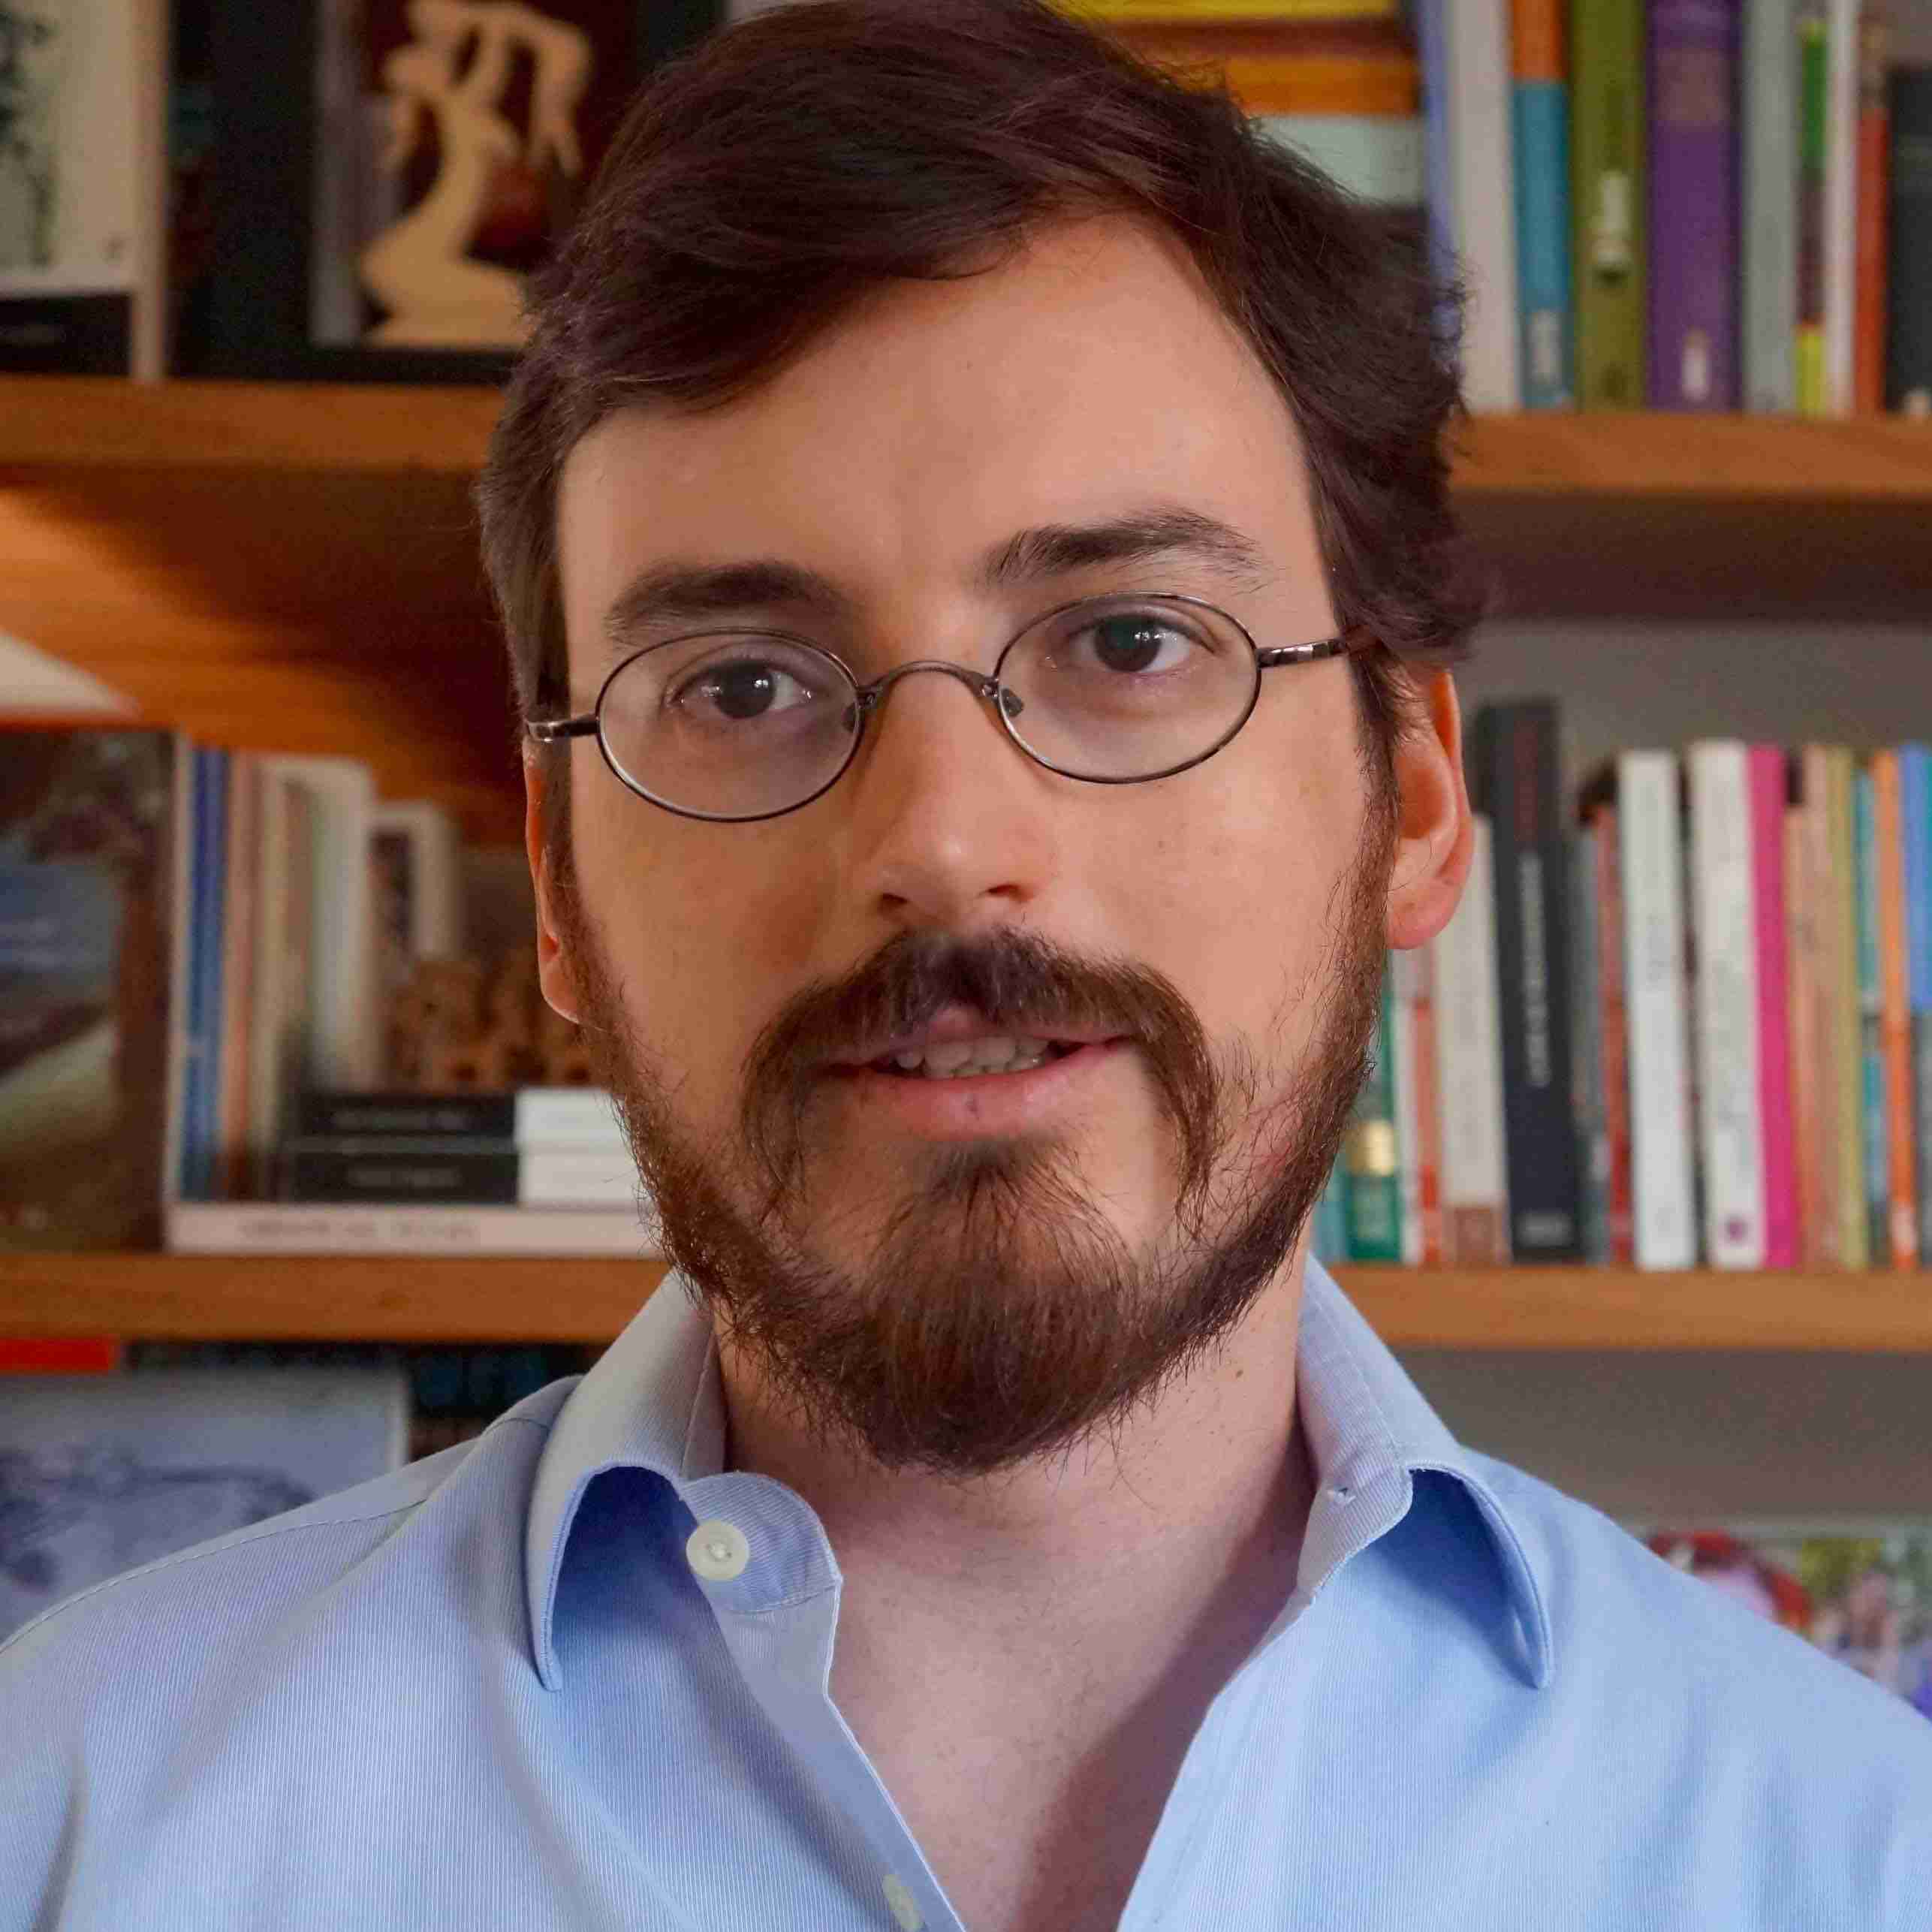 Profile image of Dr Fernando Monteiro Rugitsky